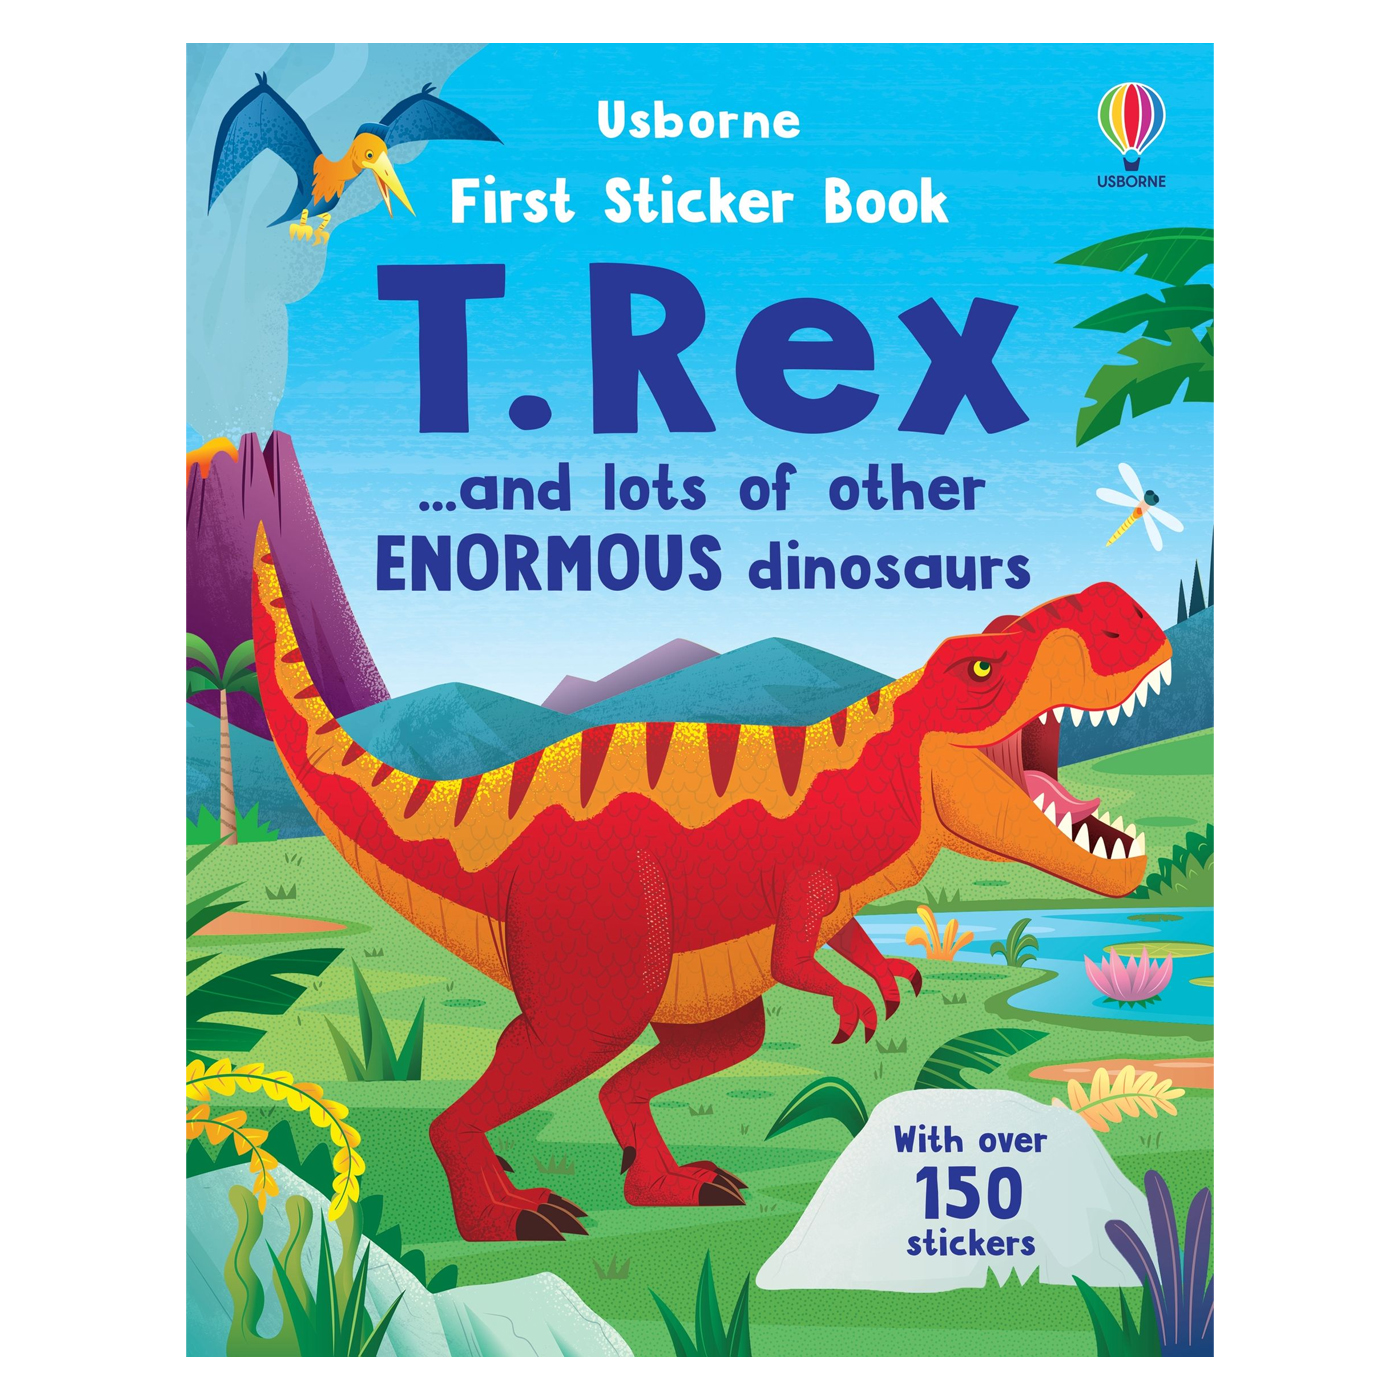  First Sticker Book T.Rex